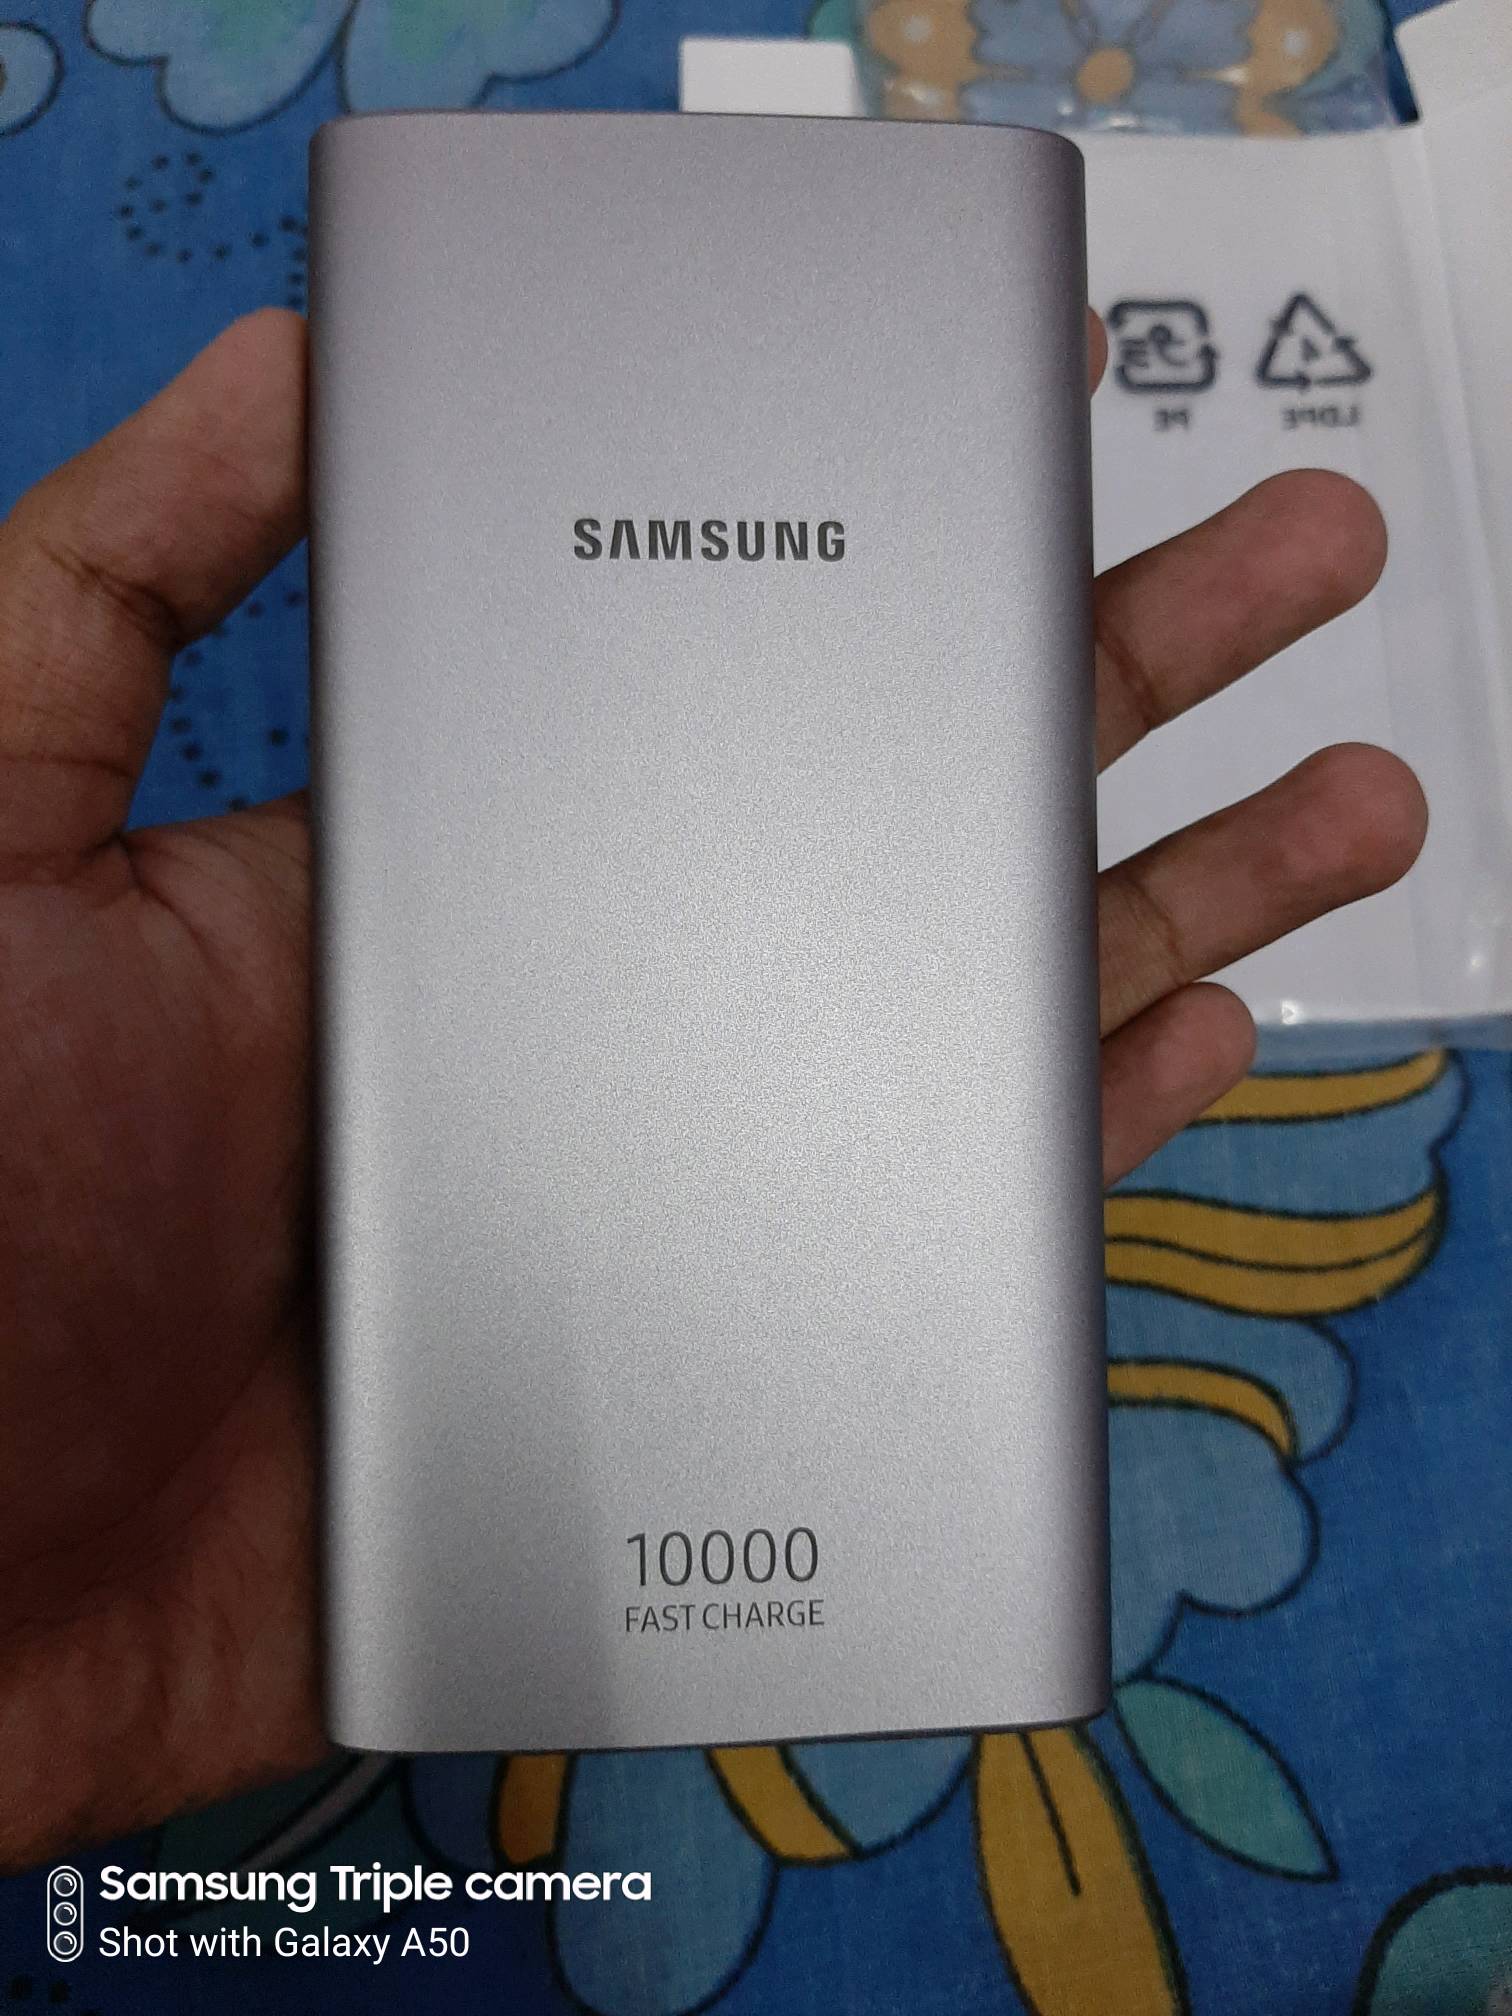 Samsung 10000mah powerbank experience - Samsung Members